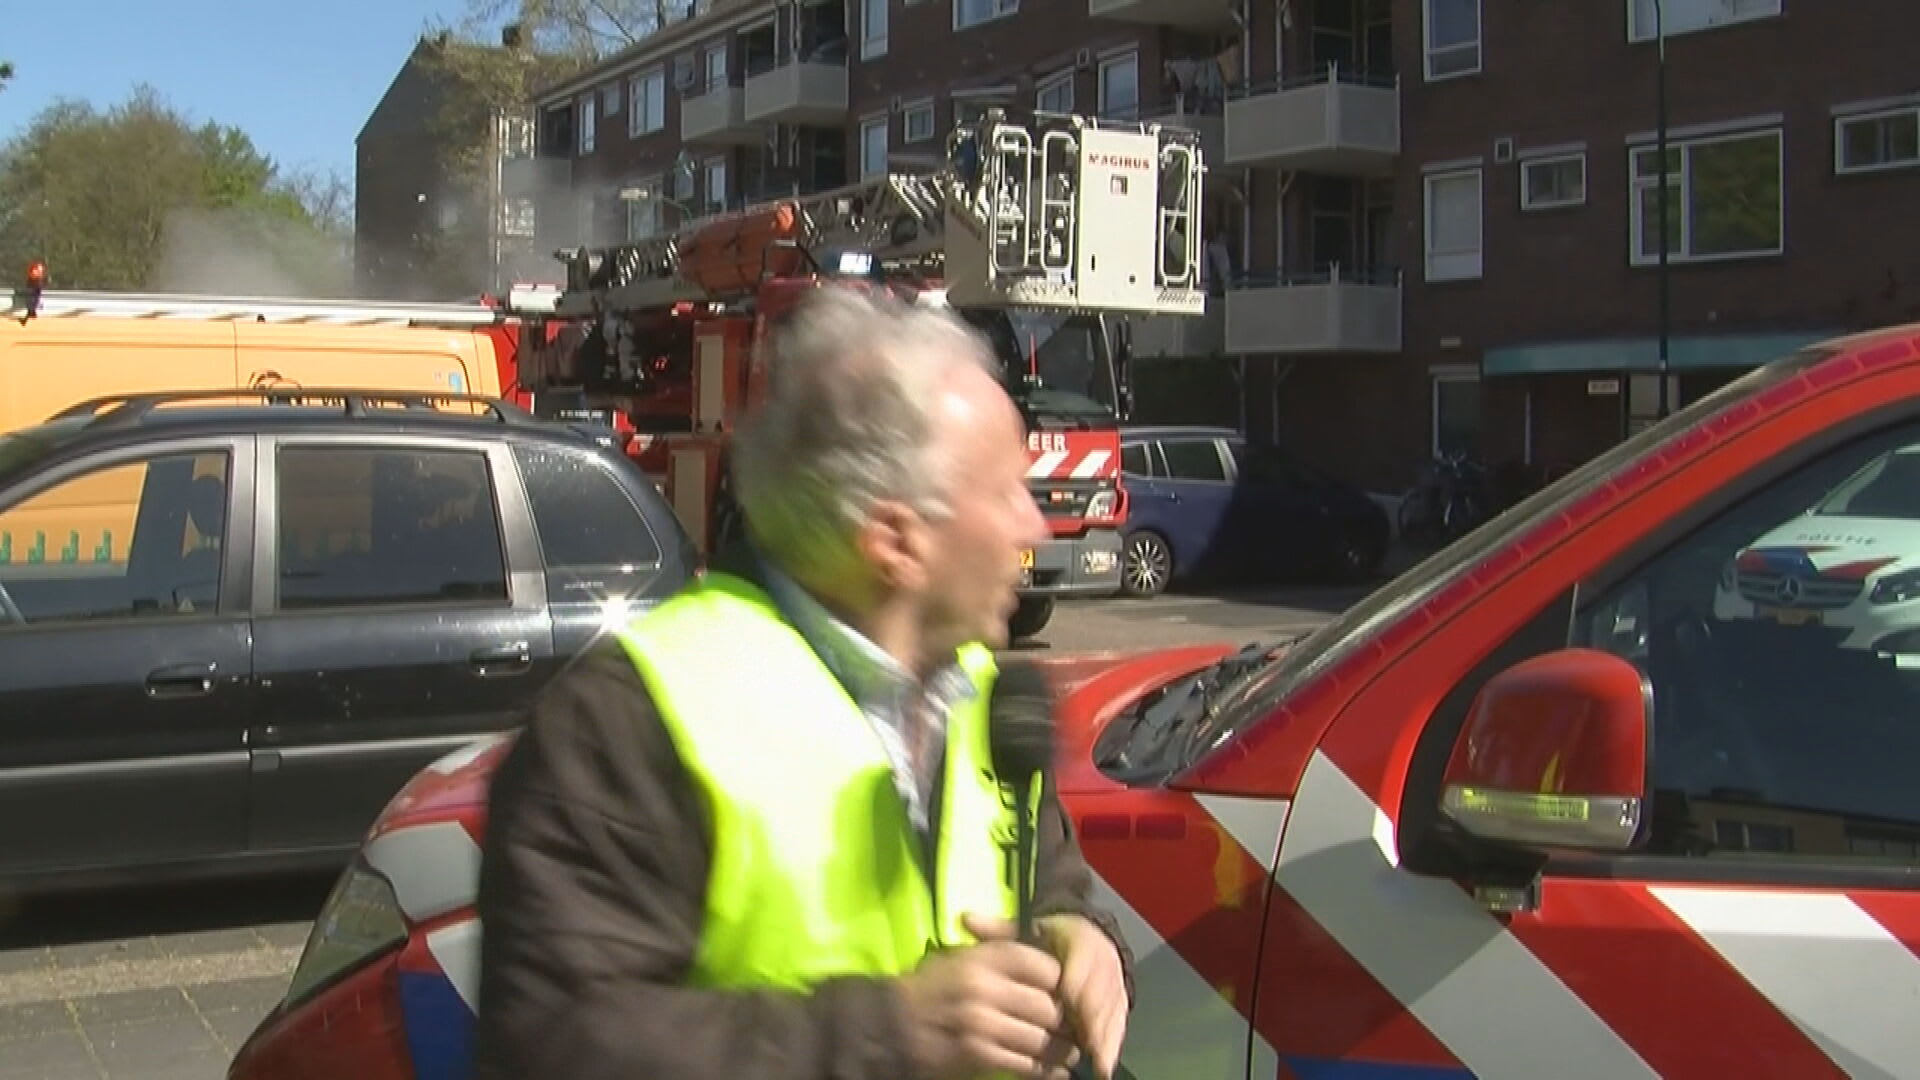 Tweede explosie in Bilthoven gefilmd, verslaggever duikt weg